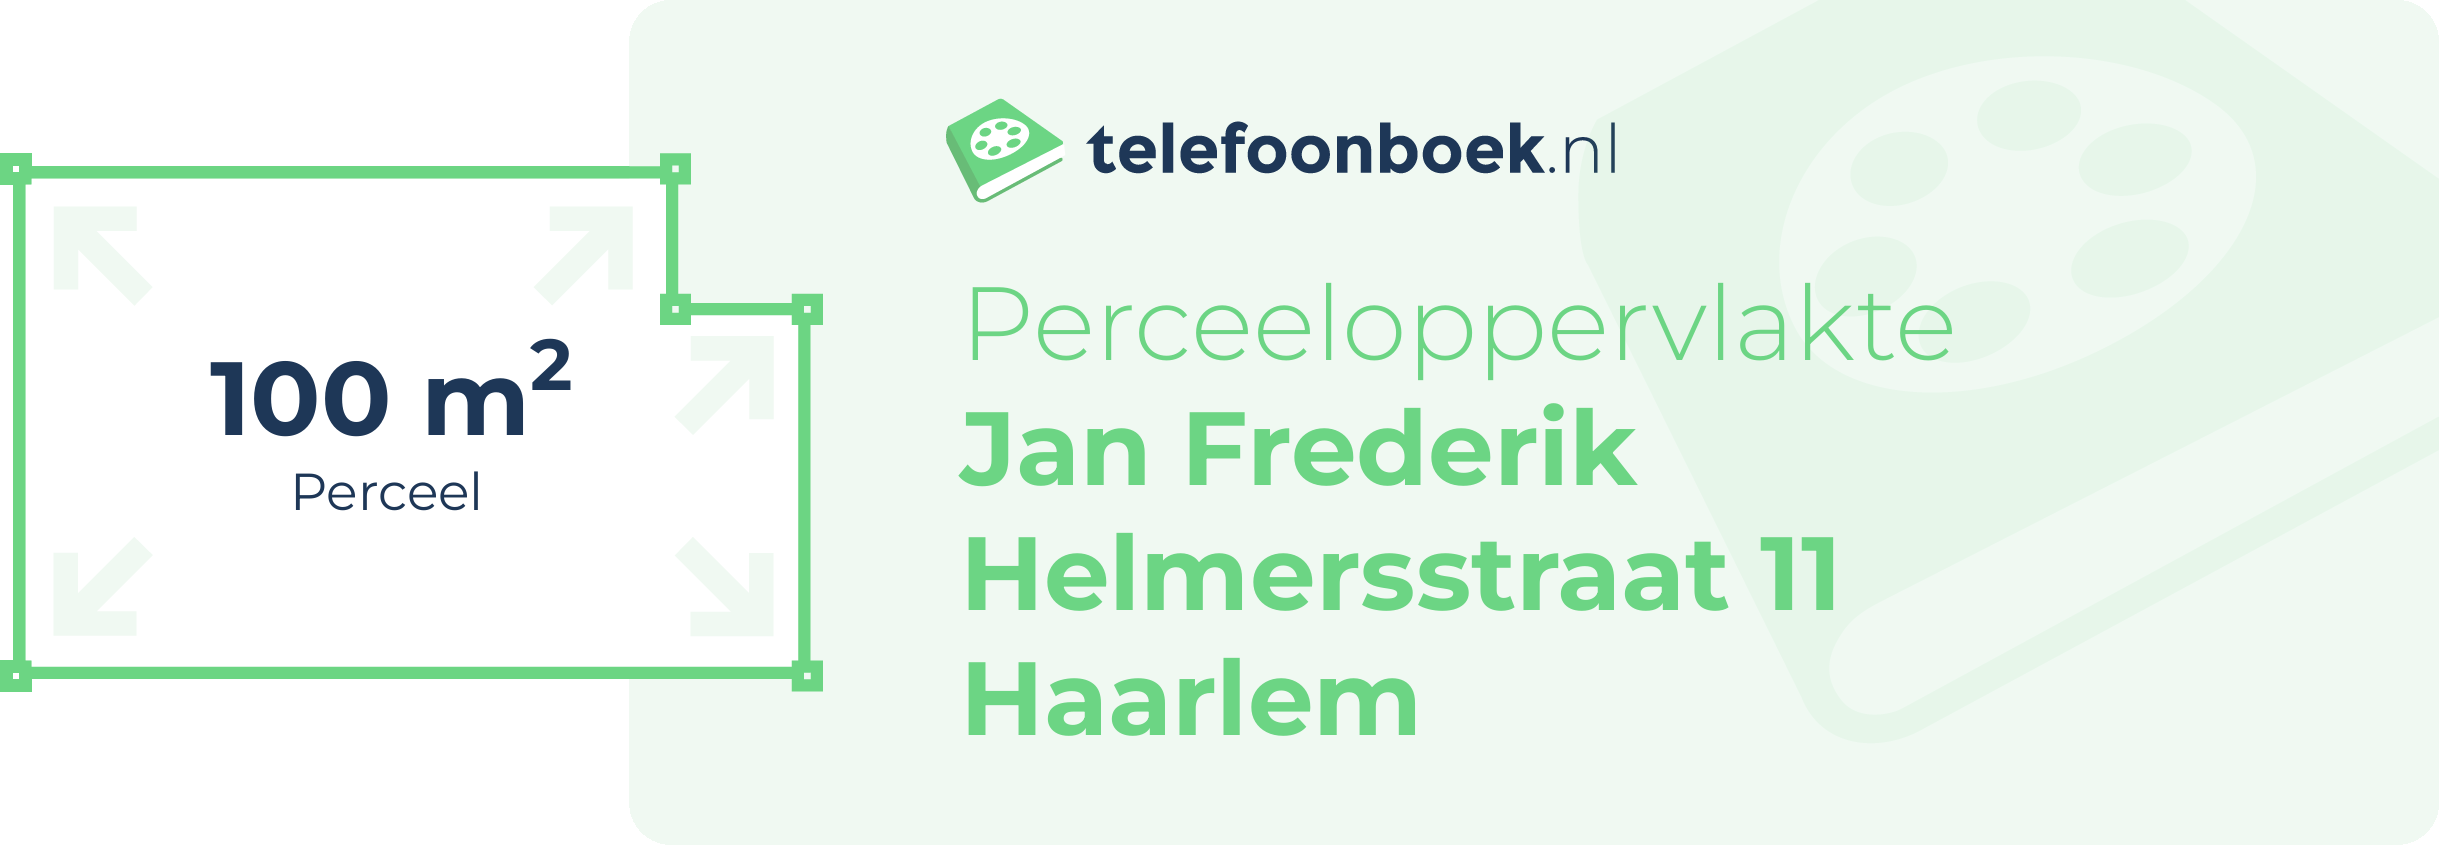 Perceeloppervlakte Jan Frederik Helmersstraat 11 Haarlem